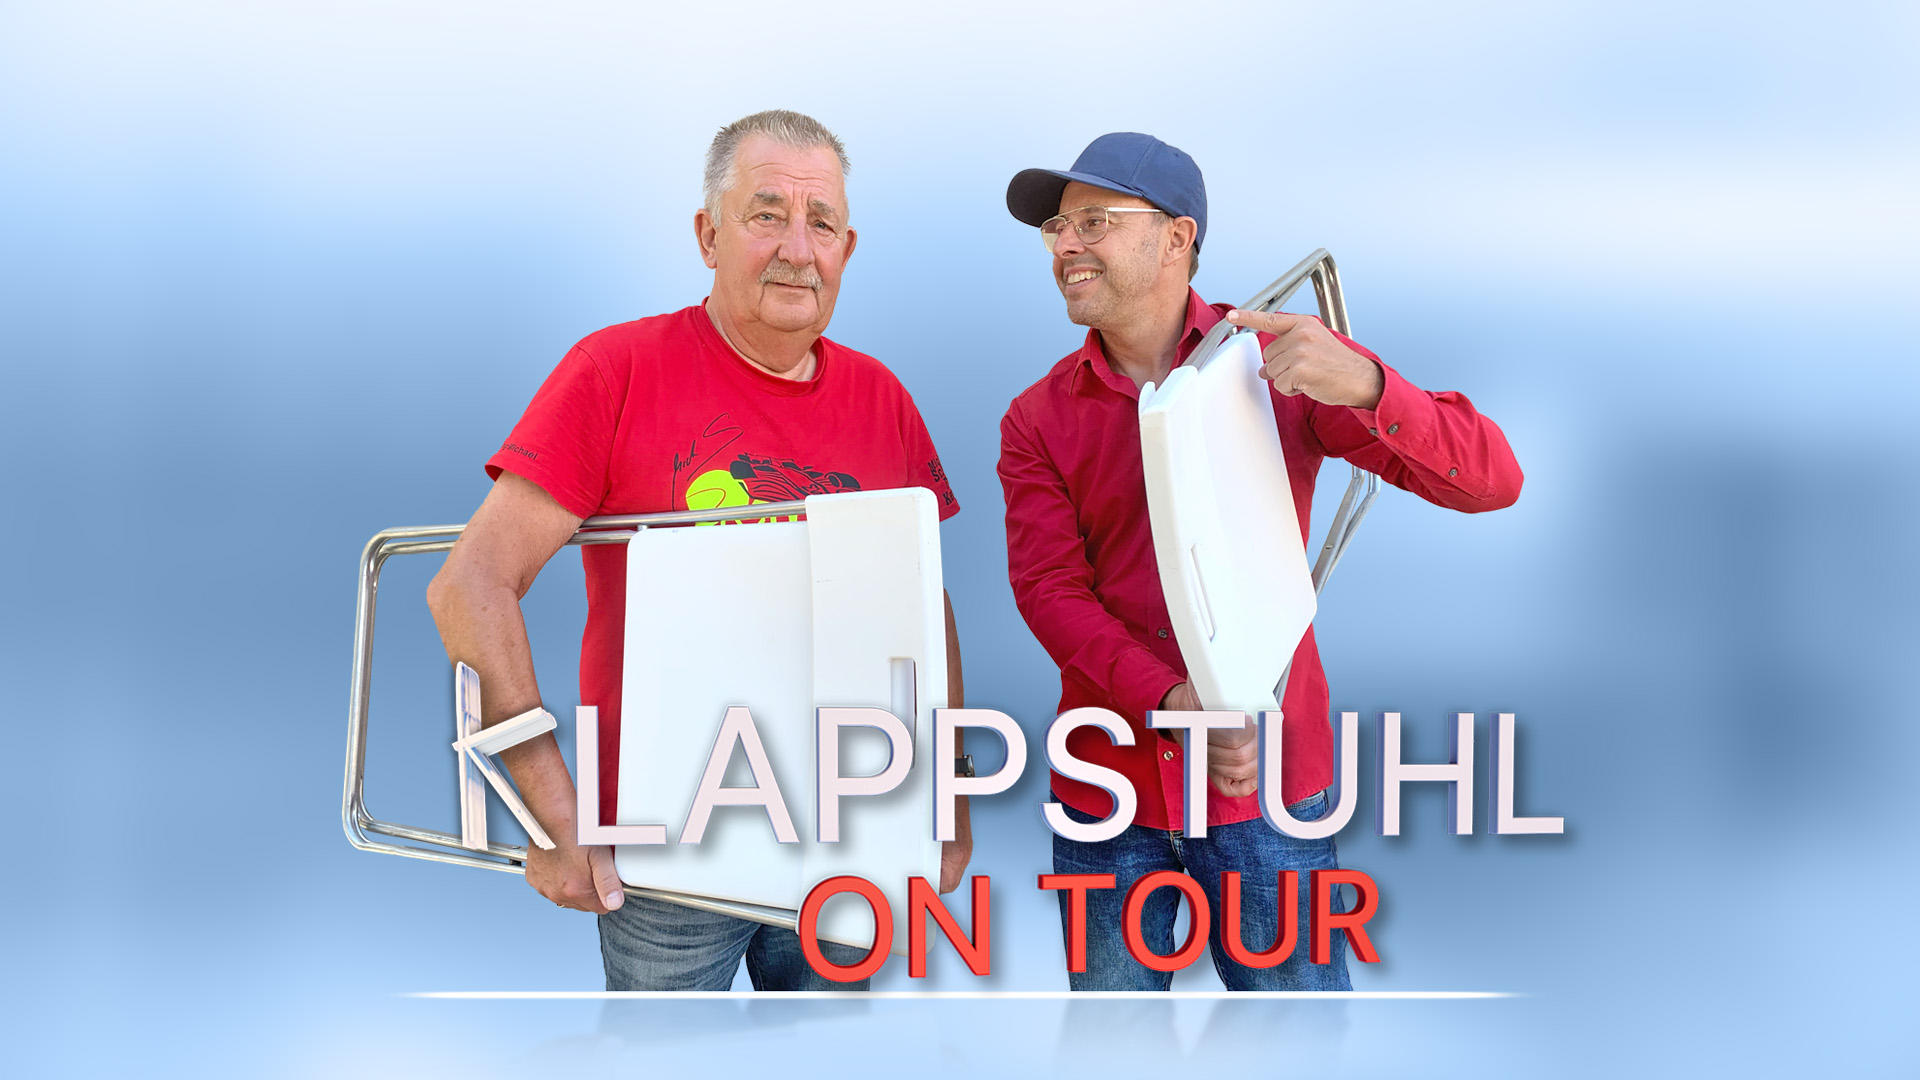 Till Quitmann trifft Schumi Fan Klappstuhl on Tour